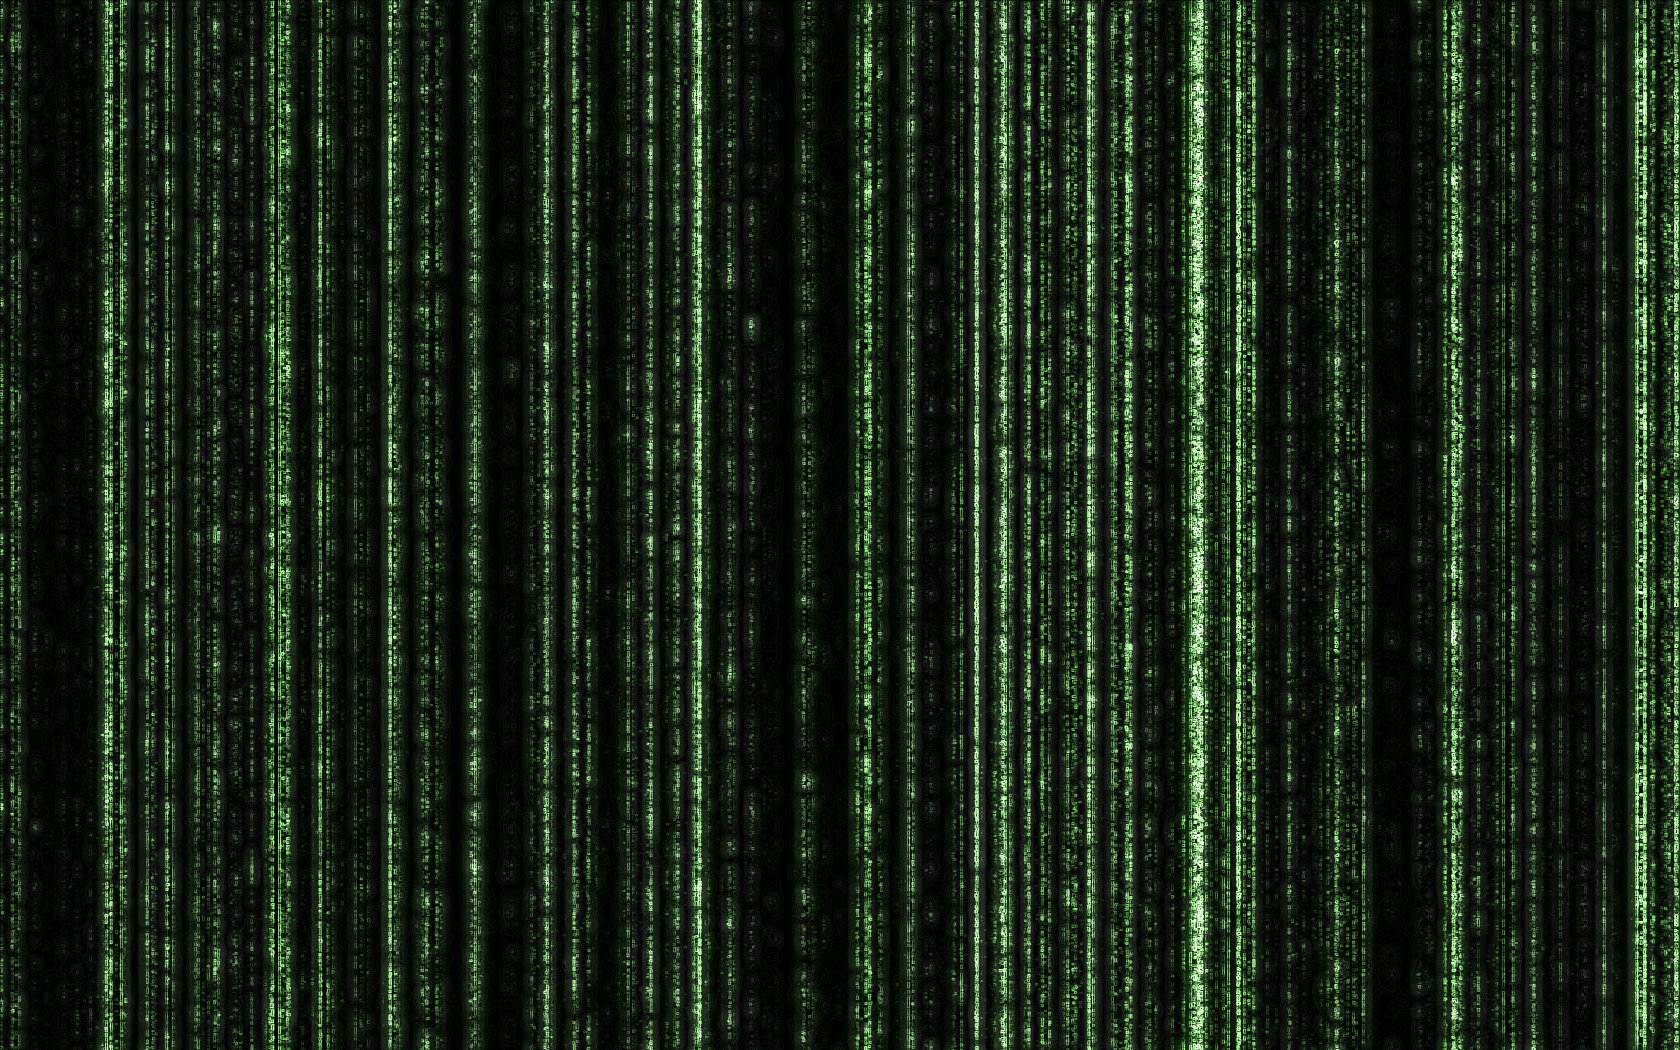 HD Matrix Wallpaper By Darkdragon15